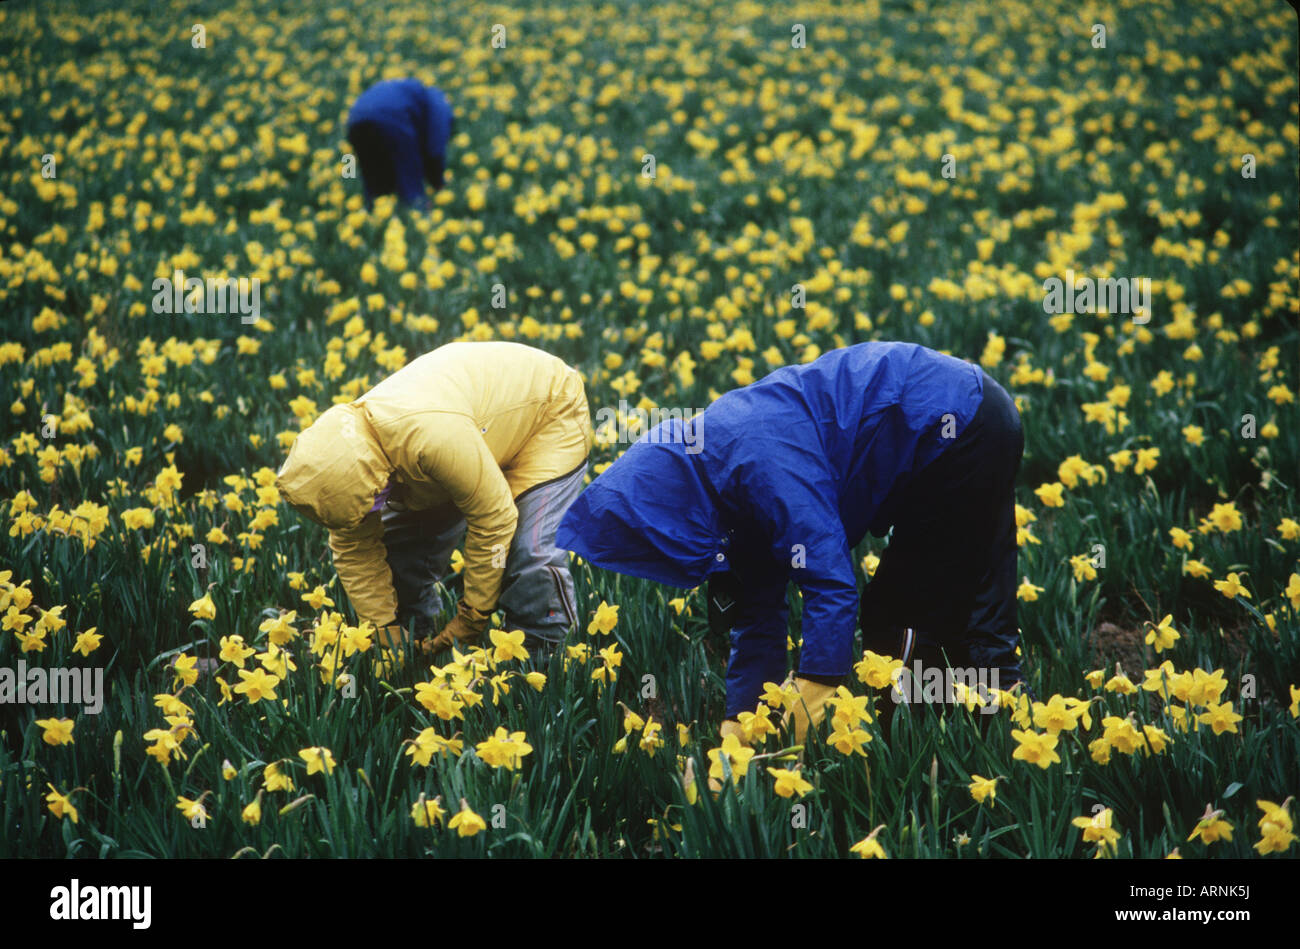 daffodil pickers, Victoria, Vancouver Island, British Columbia, Canada. Stock Photo